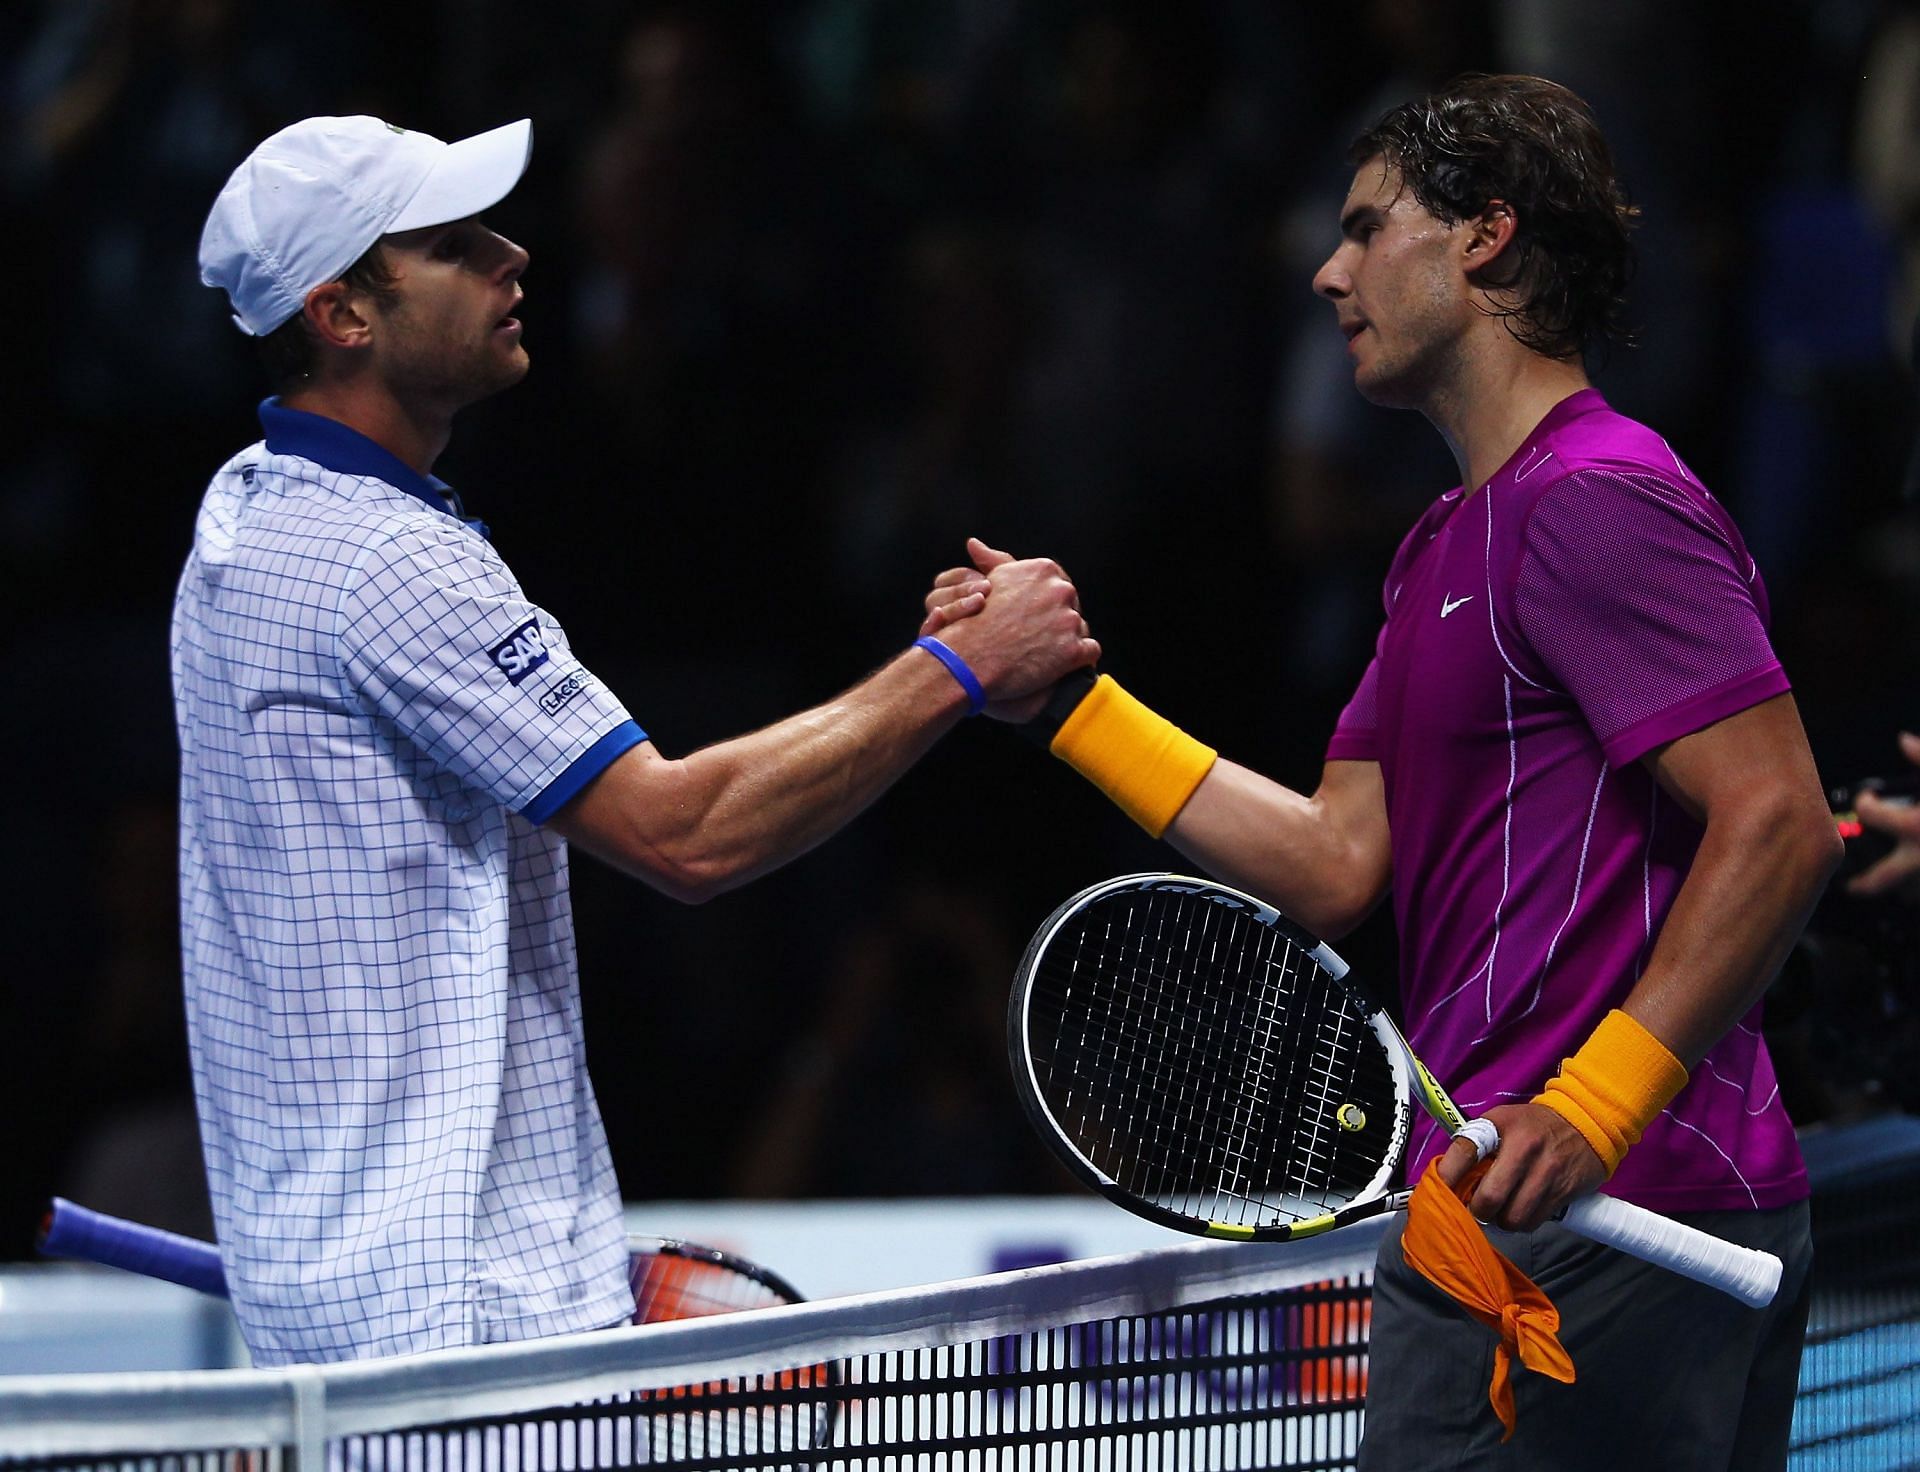 Andy Roddick (L) and Rafael Nadal